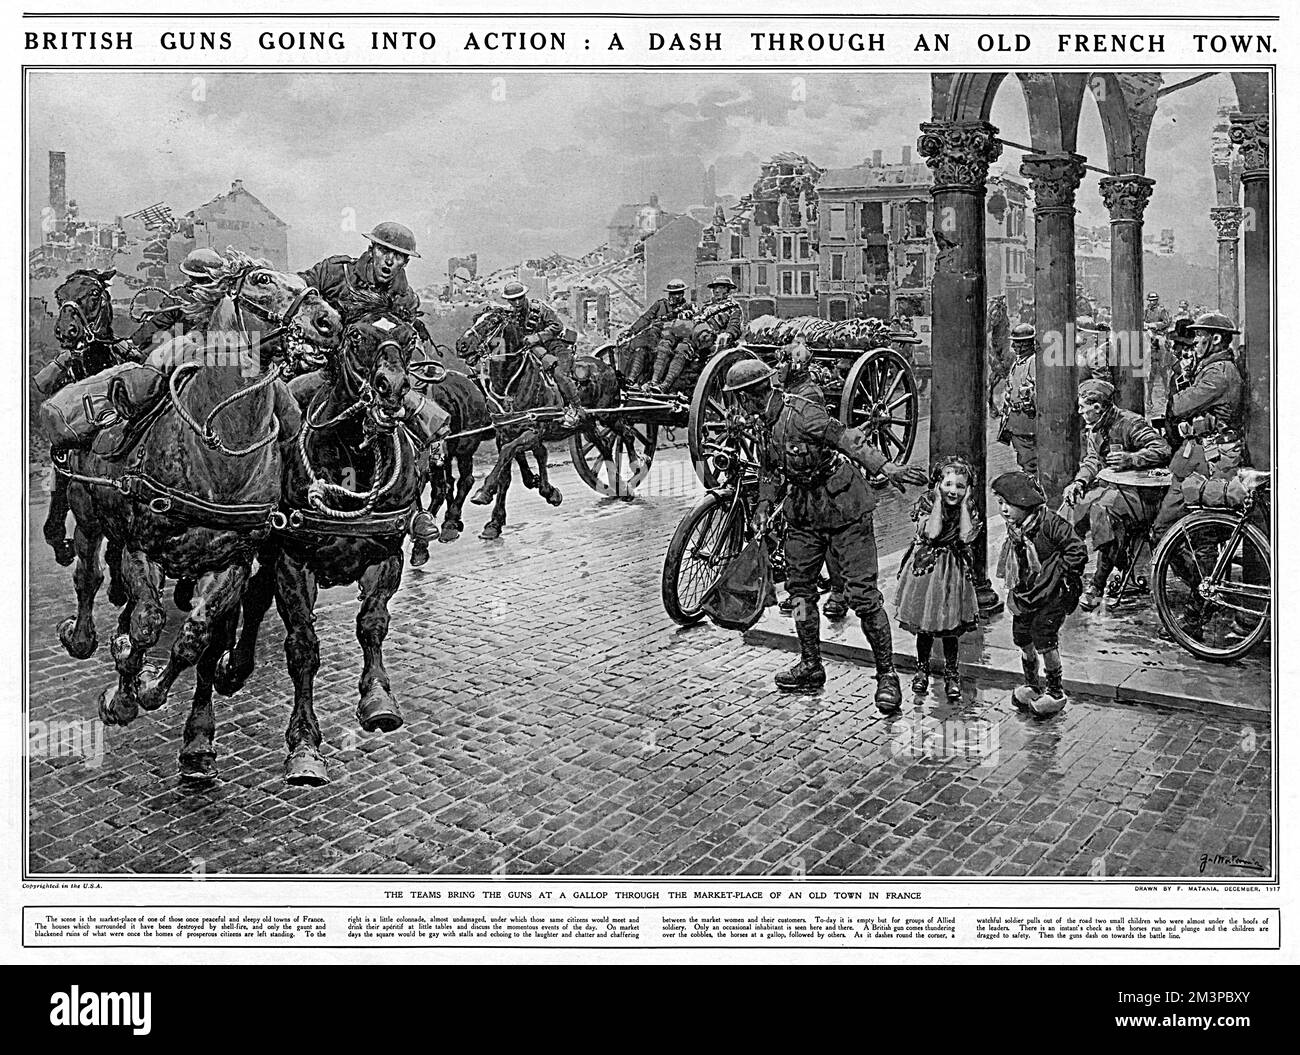 Un pezzo di artiglieria britannica è affrettato ad un galoppo attraverso il mercato-luogo di una città francese, la piazza circondata da edifici conchiglie danneggiati. Un soldato vigile assicura che i due bambini a destra non si avventurino nel sentiero dei cavalli. Dicembre 1917 Foto Stock